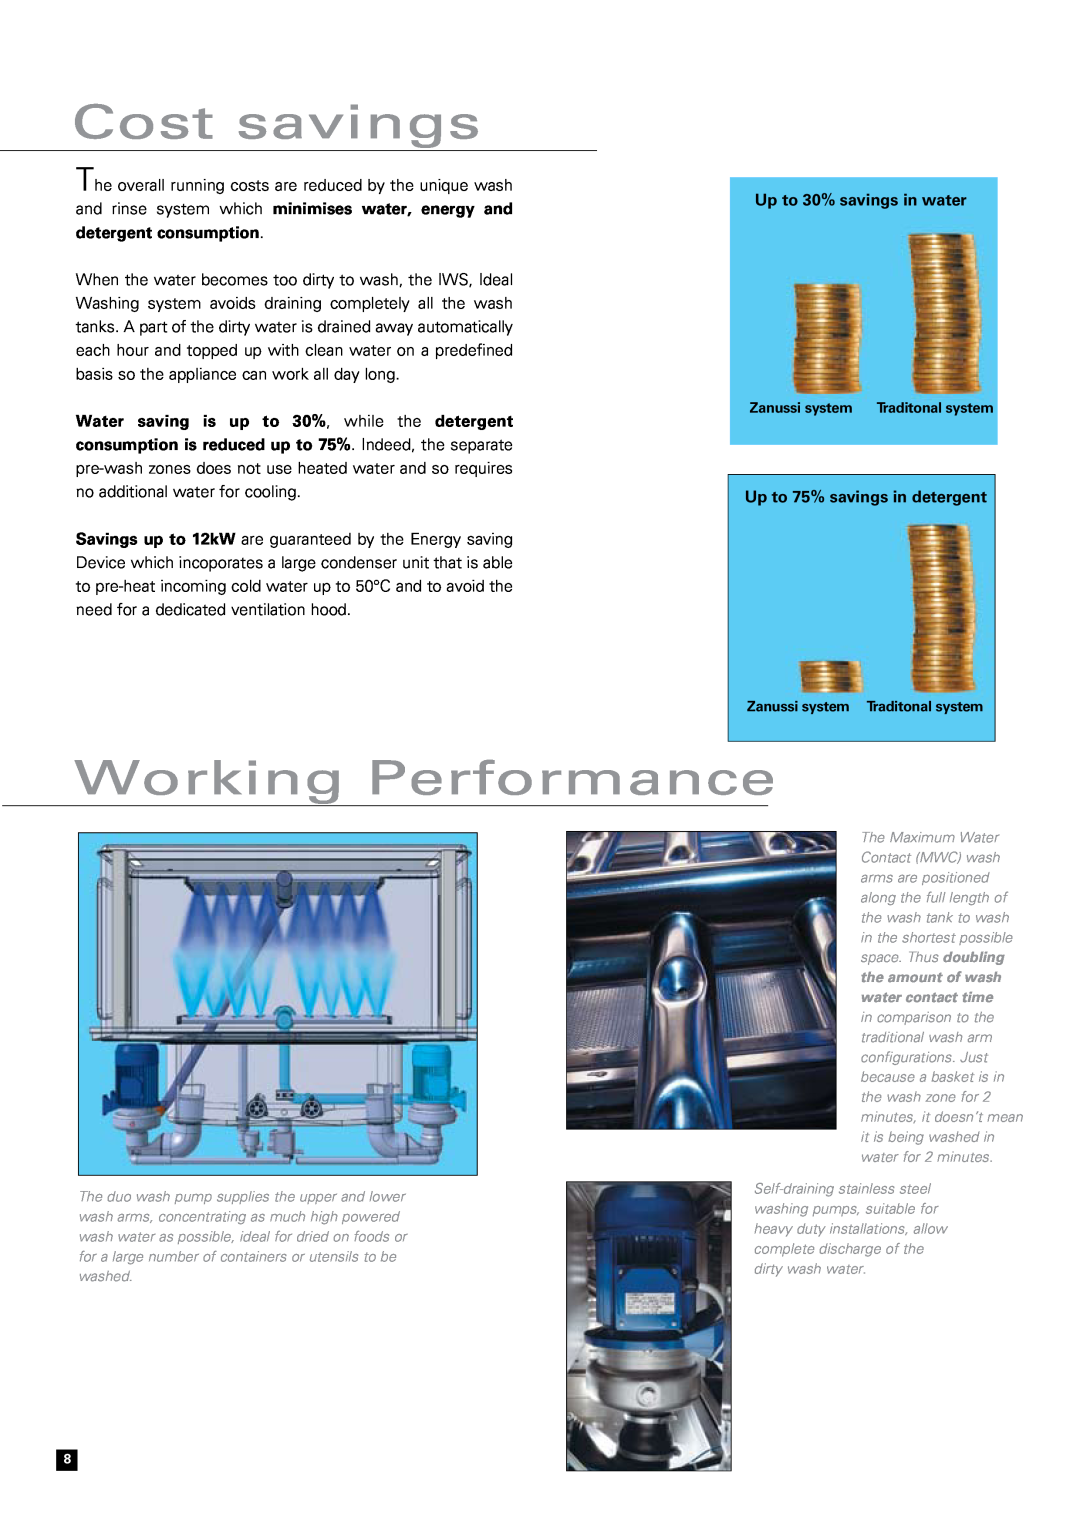 Zanussi RTM 180, Snack 600 Cost savings, Working Performance, Up to 30% savings in water, Up to 75% savings in detergent 